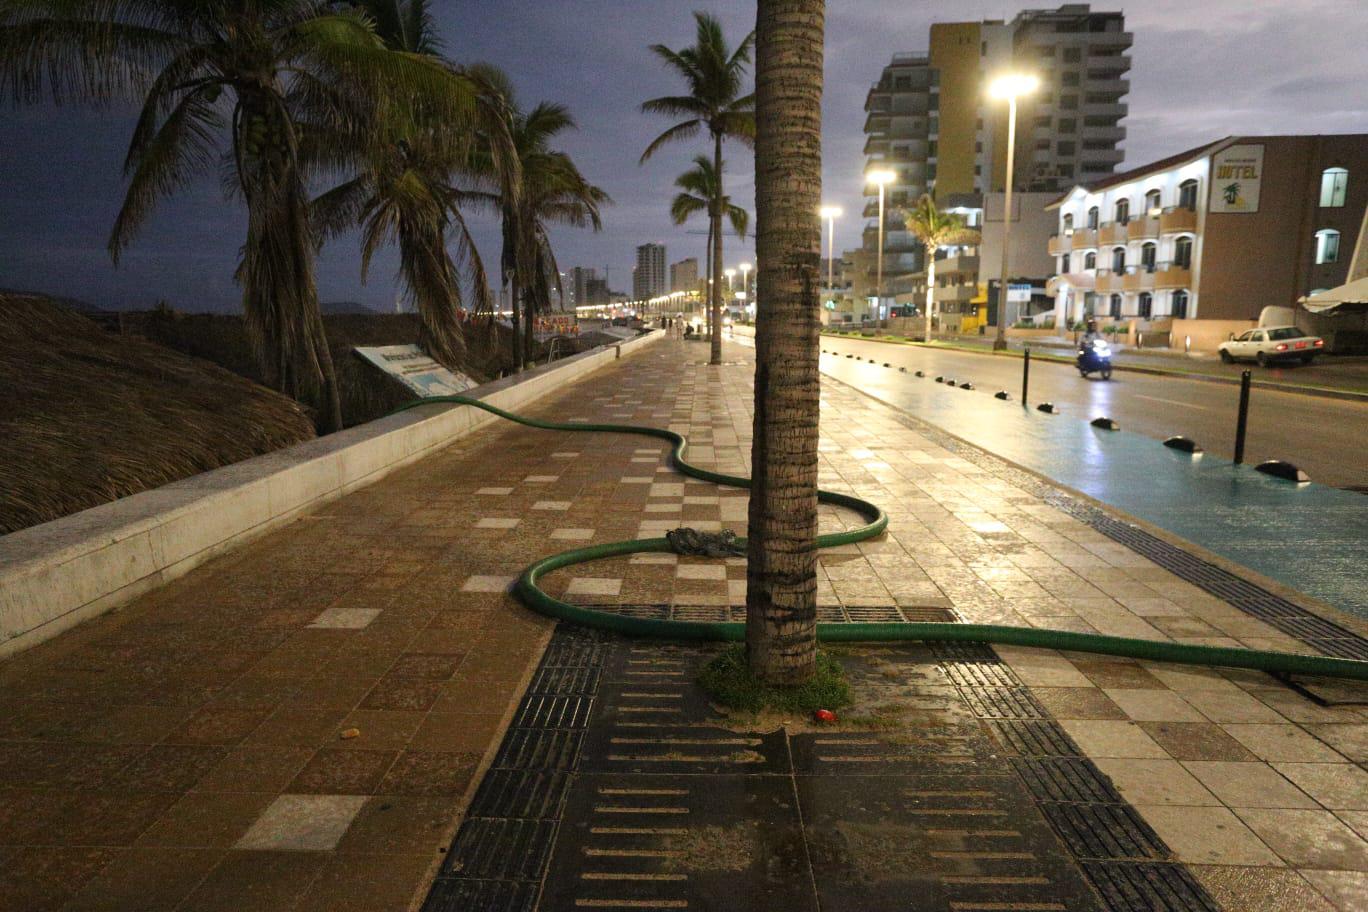 $!En Mazatlán, desde temprano salen al malecón a ejercitarse, pero la limpieza de baños portátiles los pone en riesgo